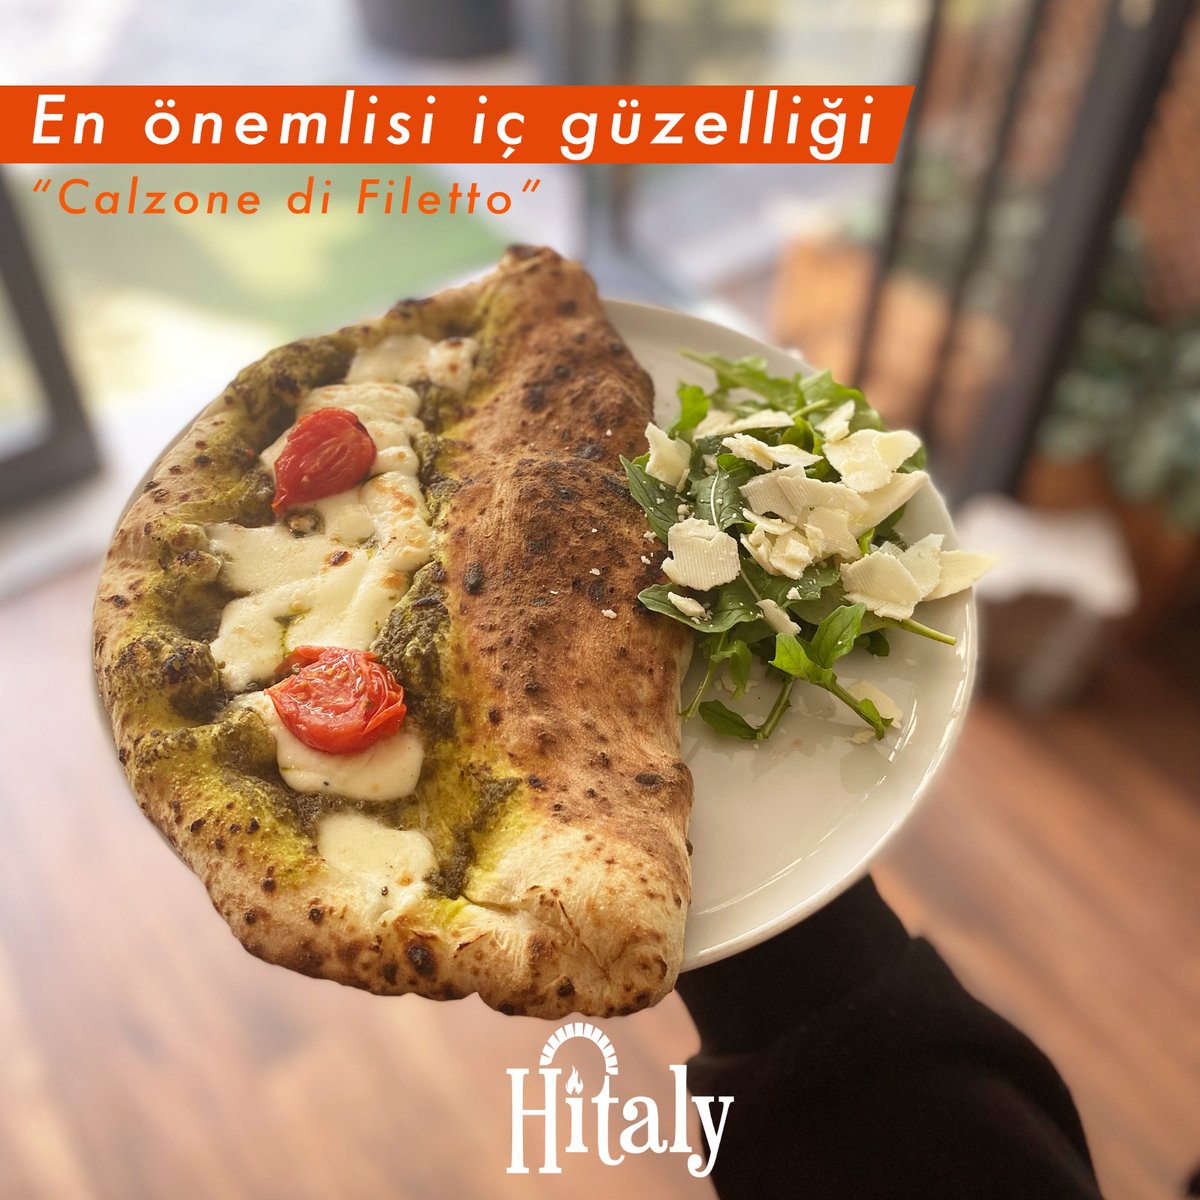 En önemlisi iç güzelliği 🤍 Hitaly'nin lezzeti içinde gizli nefis Calzone di Filetto'sunu denediniz mi?

#calzone #italiancusine #italyanmutfağı #tekirdağ #food #çorlu